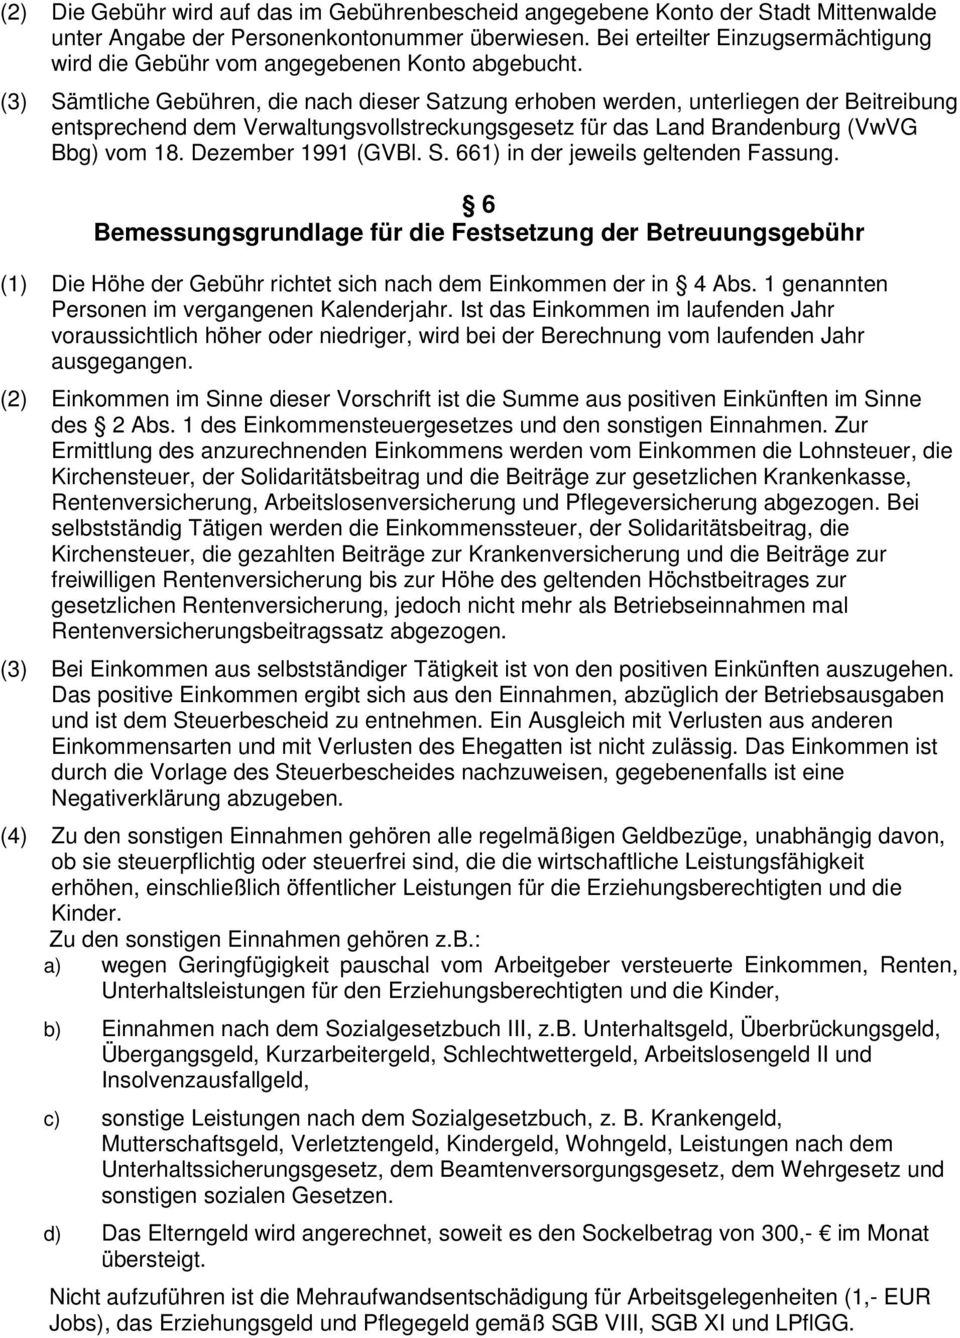 (3) Sämtliche Gebühren, die nach dieser Satzung erhoben werden, unterliegen der Beitreibung entsprechend dem Verwaltungsvollstreckungsgesetz für das Land Brandenburg (VwVG Bbg) vom 18.